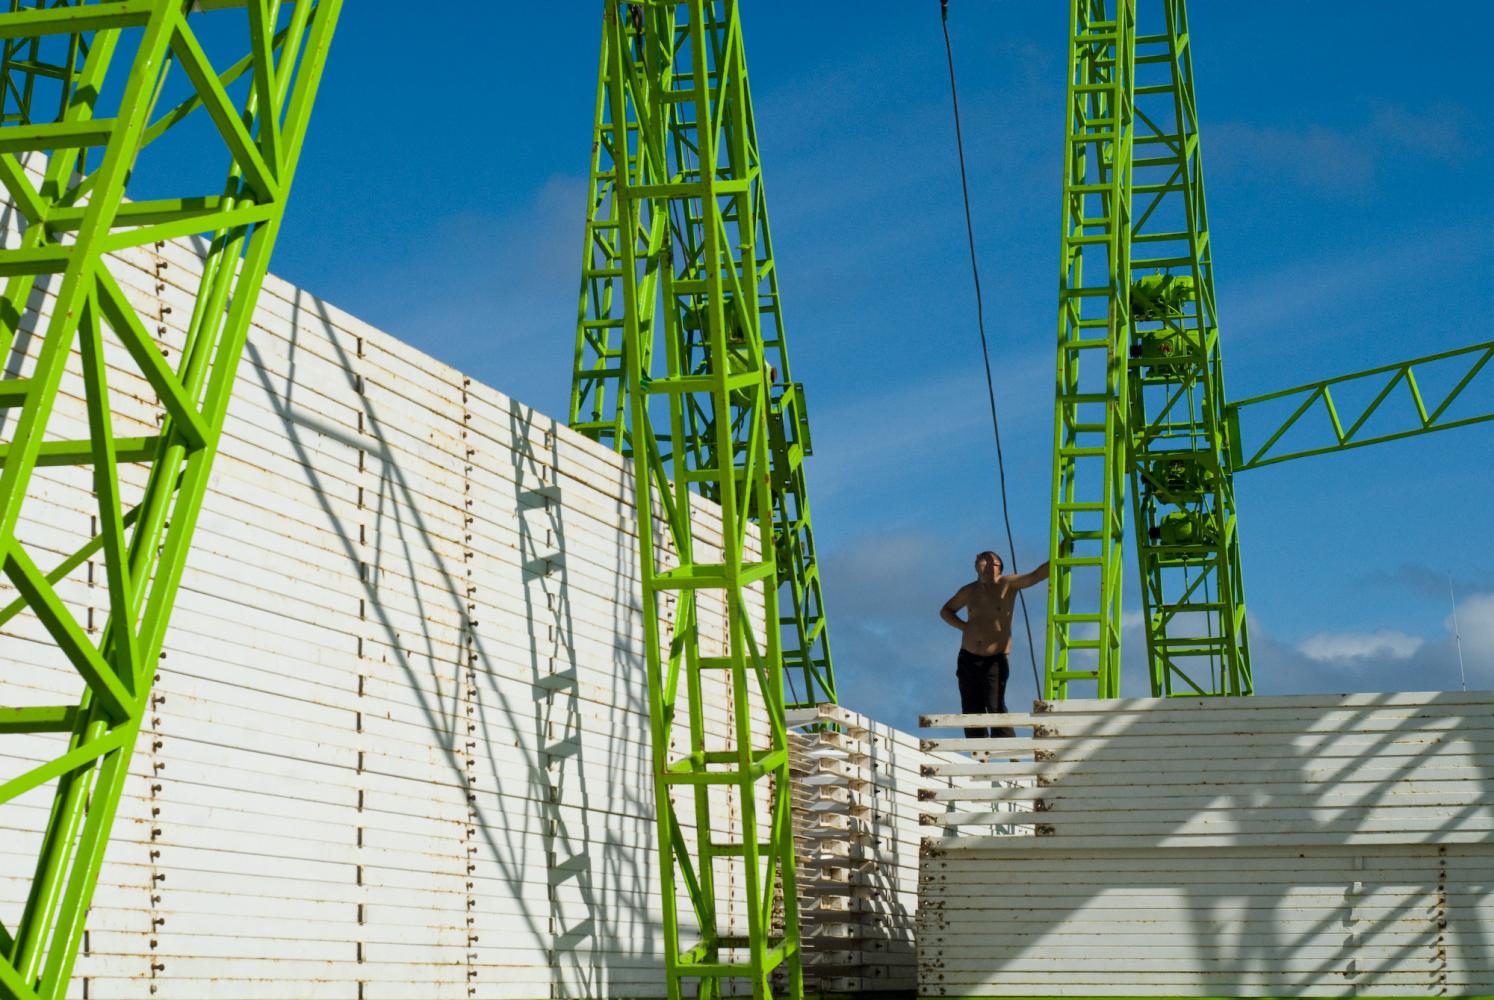 Debout sur des piles de barrières métalliques blanches, sur fond de ciel bleu, un homme s'appuie à la structure verte d'une grande roue foraine. Ténérife, Canaries, janvier 2010.